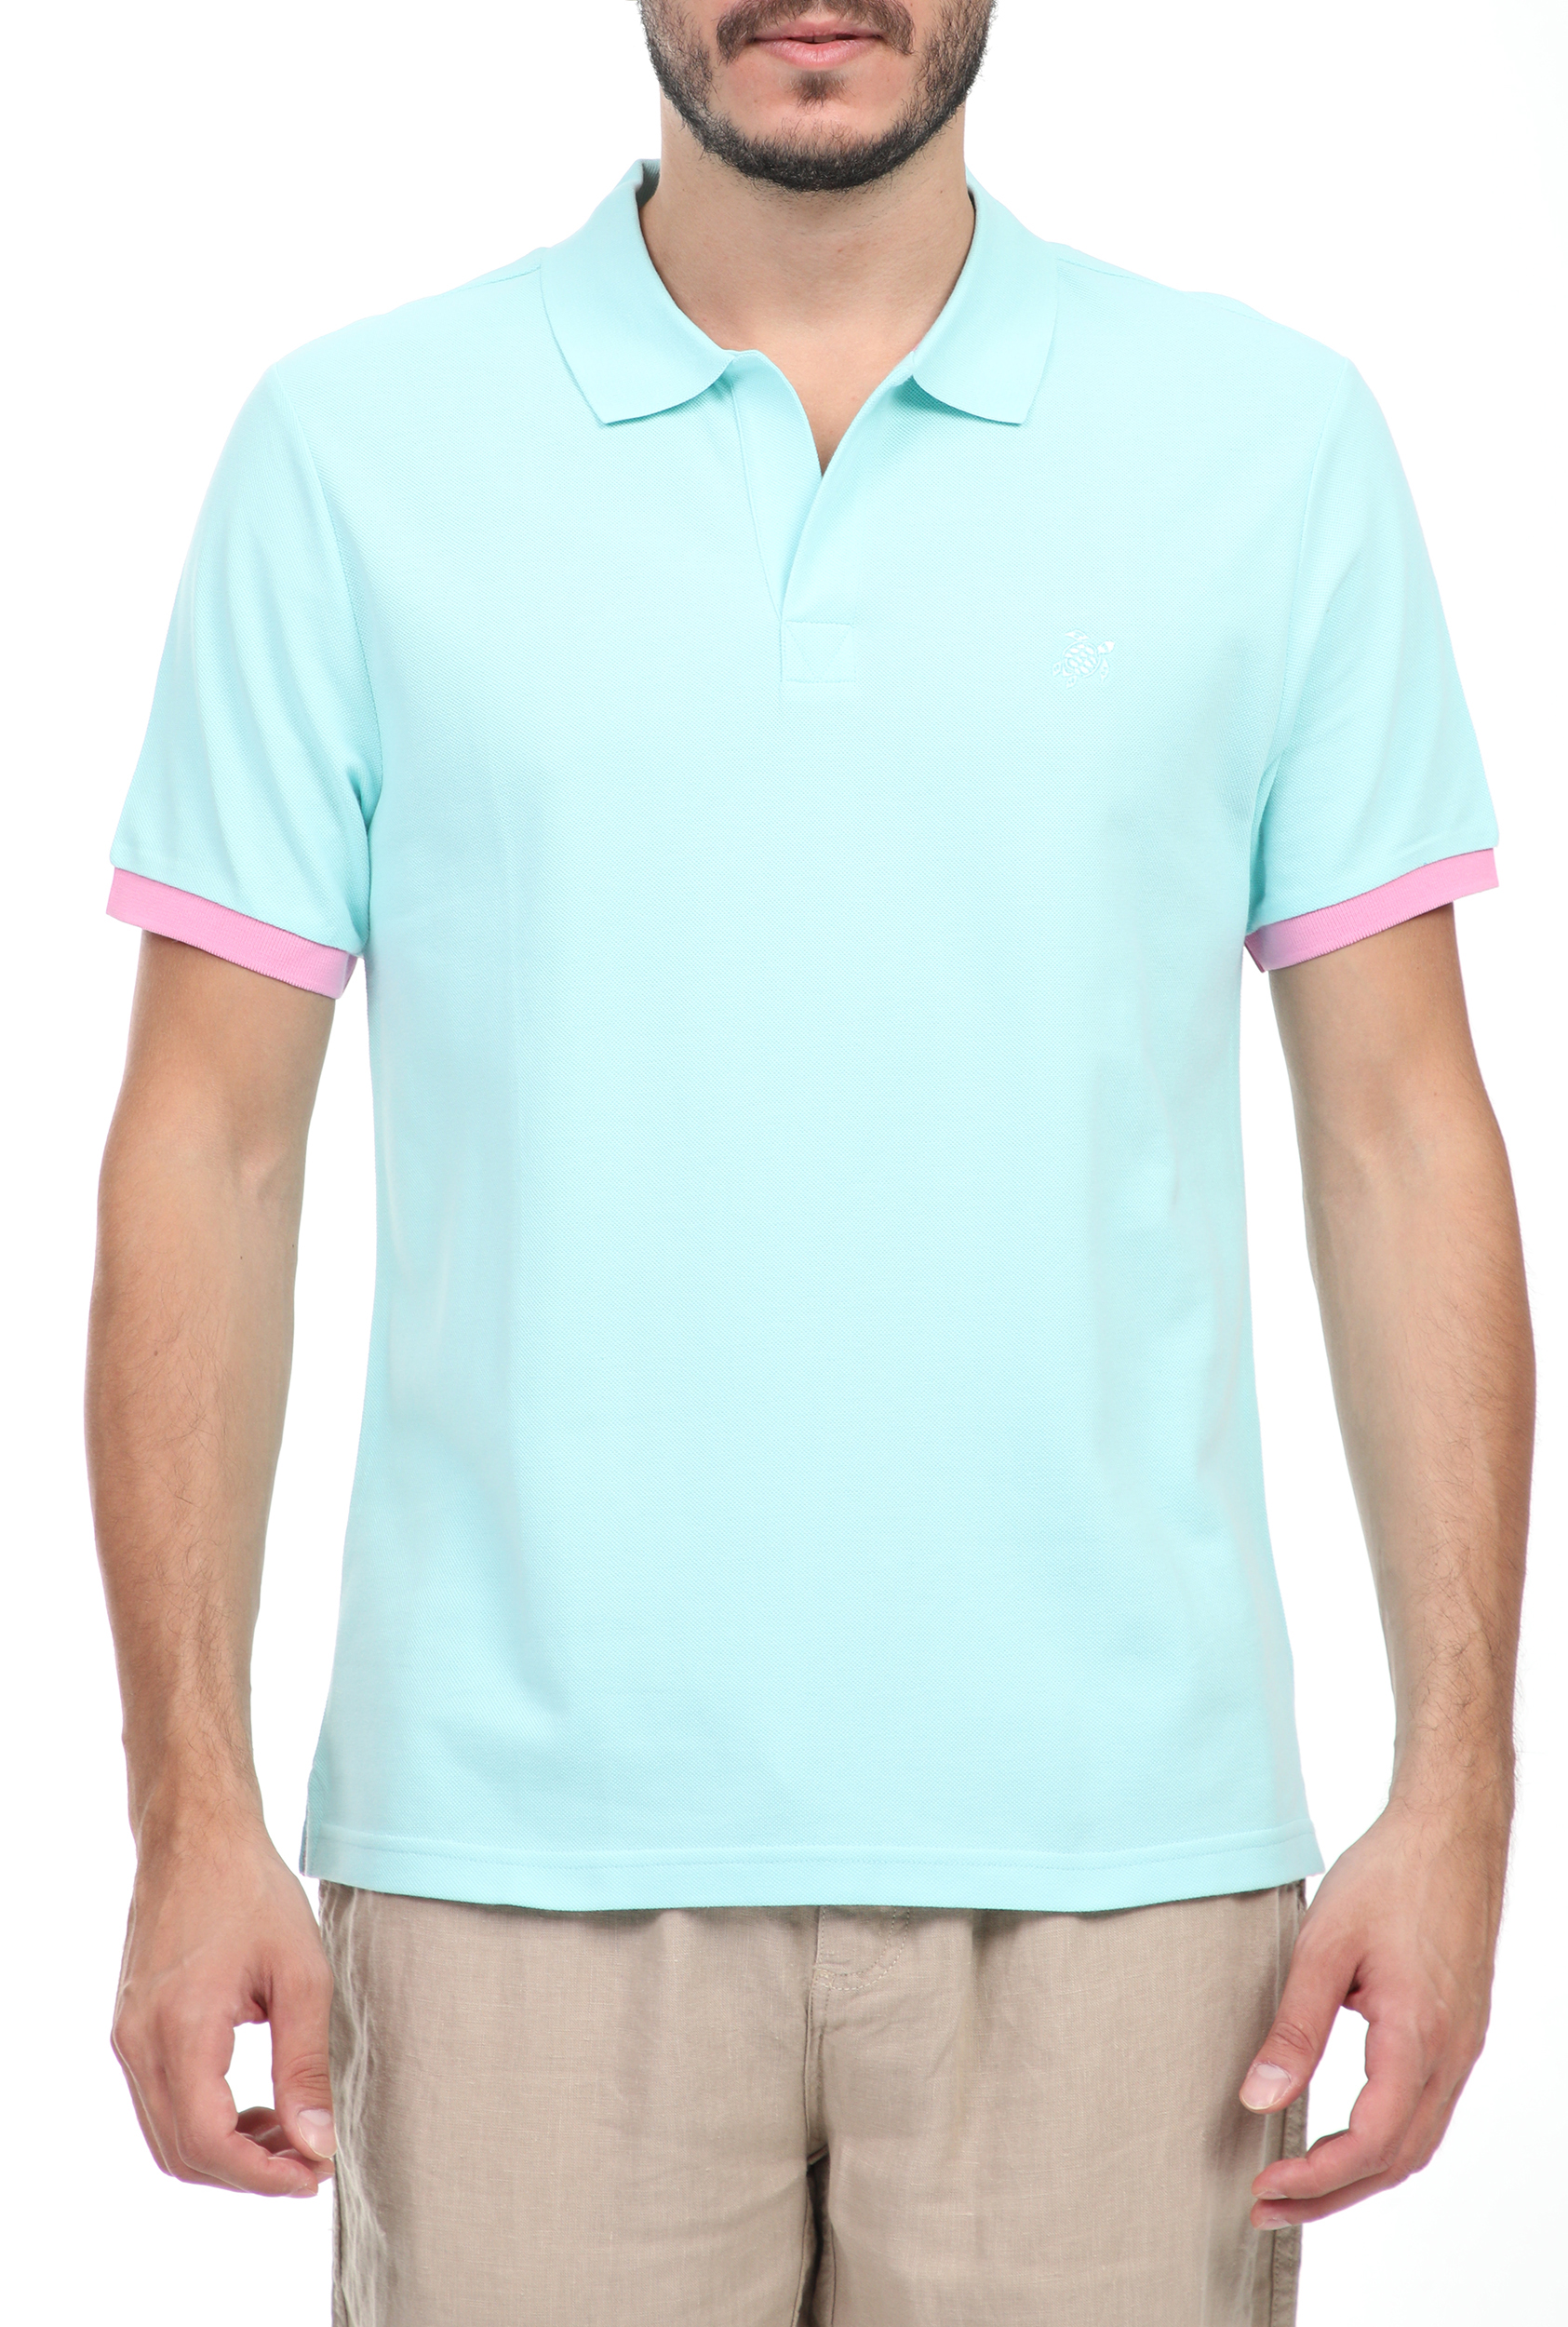 Ανδρικά/Ρούχα/Μπλούζες/Πόλο VILEBREQUIN - Ανδρική polo μπλούζα VILEBREQUIN PALATIN μπλε